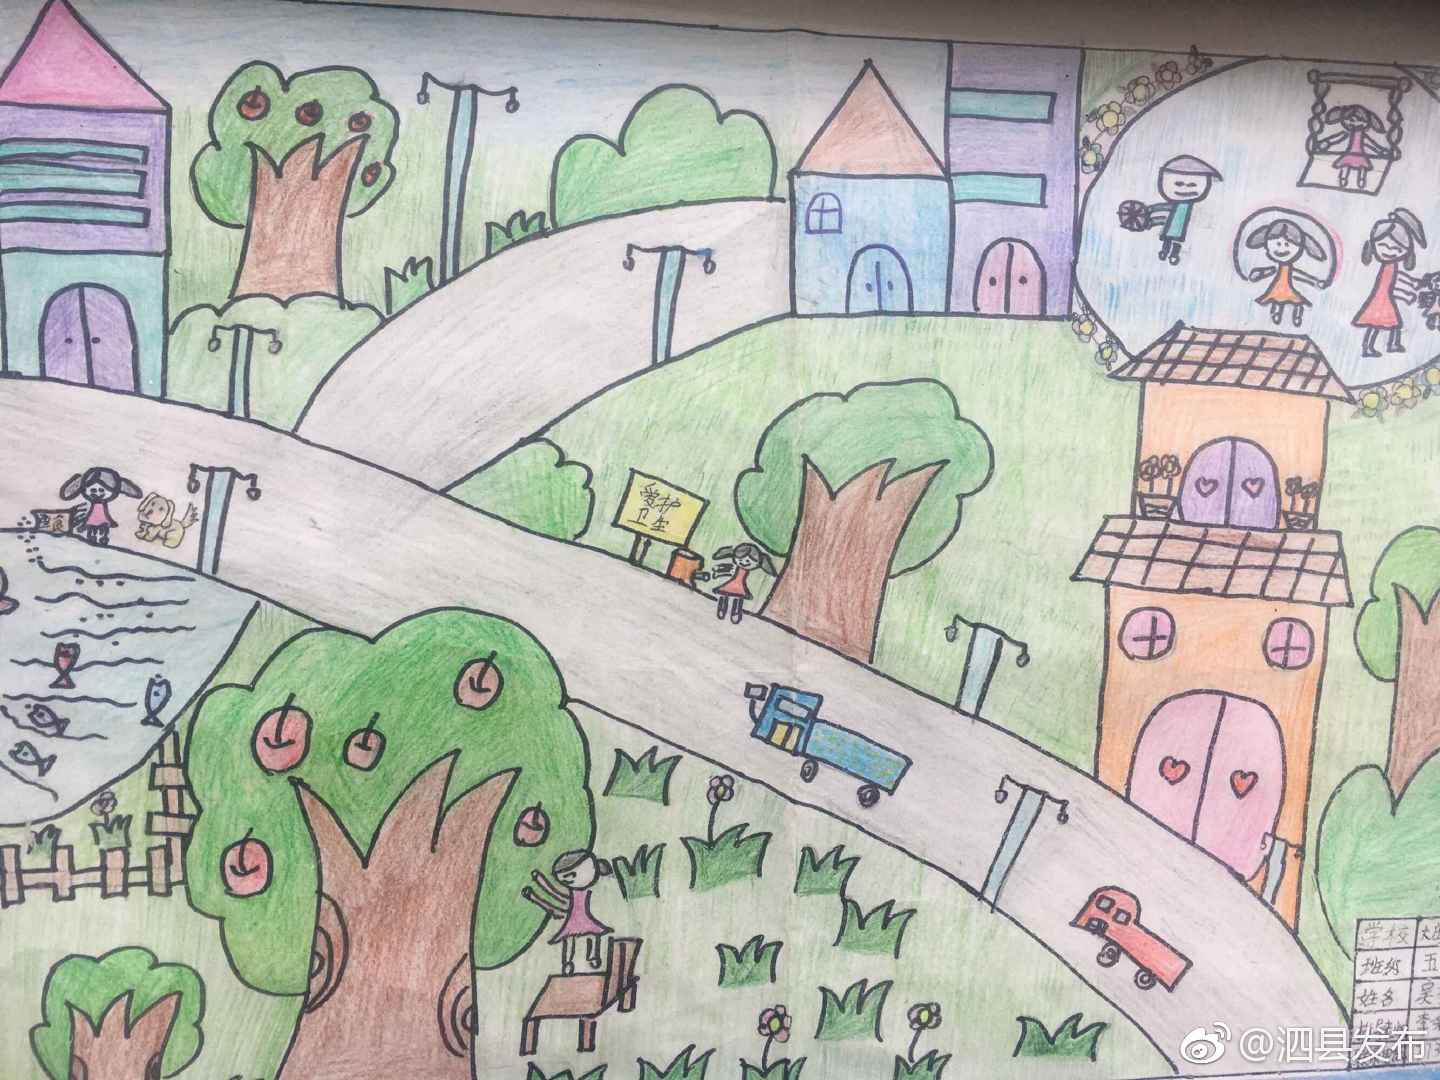 大庄中心校举行"脱贫攻坚童眼看,我画家乡新变化"小学生绘画比赛